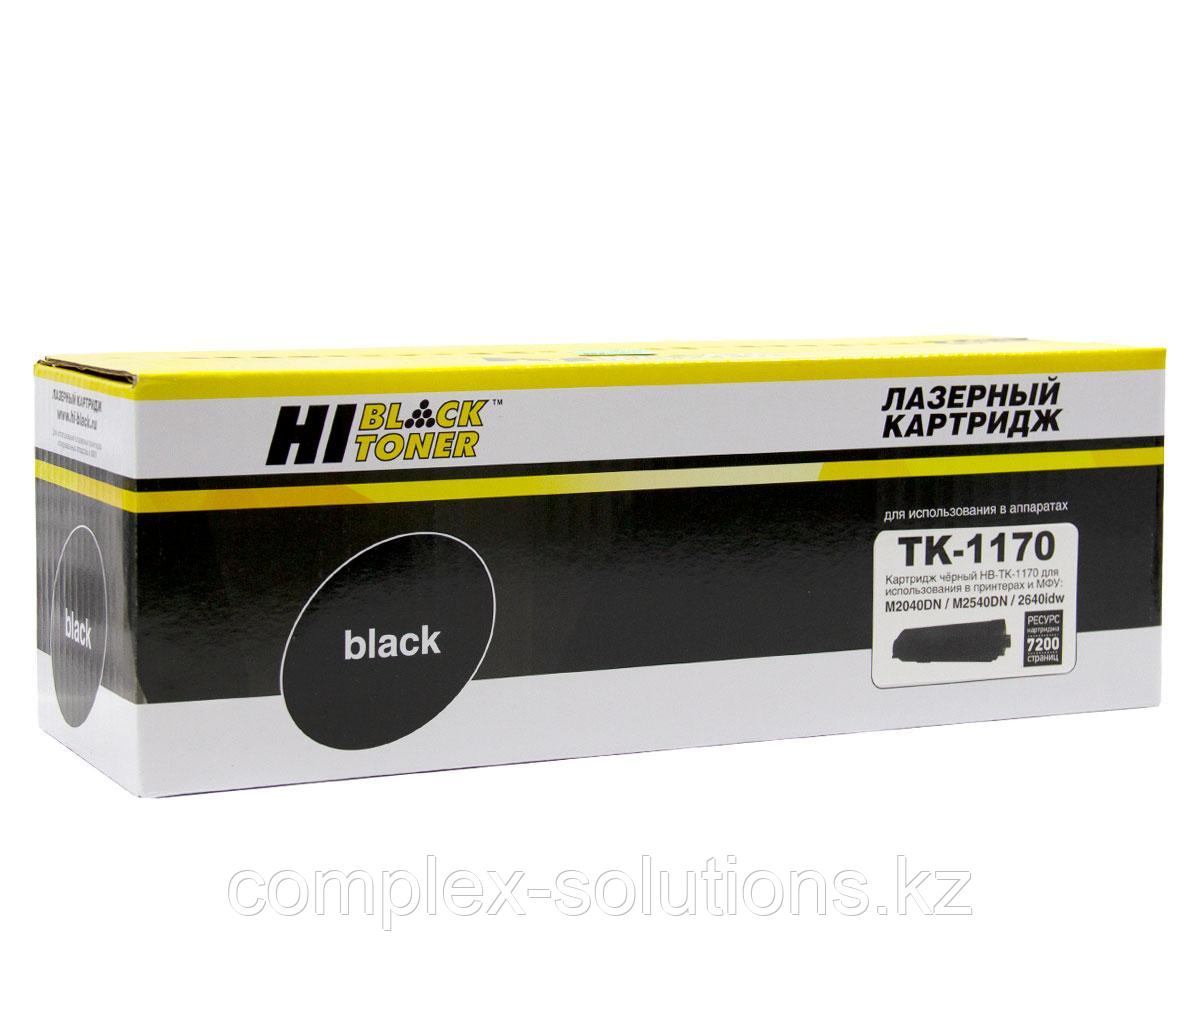 Тонер картридж Hi-Black [TK-1170] для Kyocera M2040dn | M2540dn, 7,2K, с чипом | [качественный дубликат]